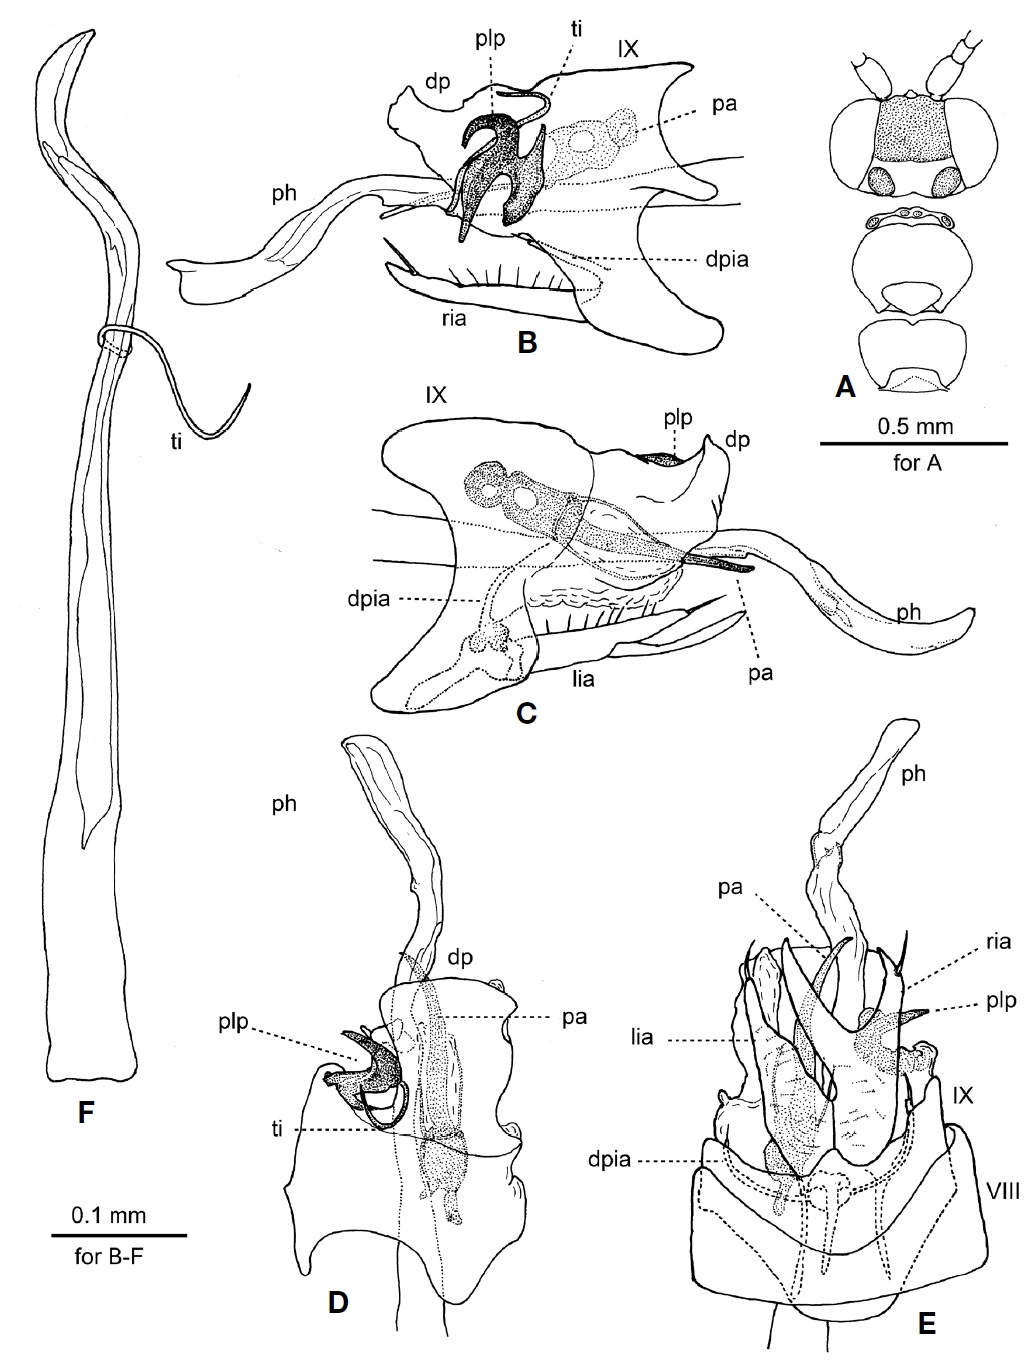 Male of Orthotrichia coreana sp. nov. A, Head and thorax, dorsal; B, Genitalia, right lateral; C, Genitalia, left lateral; D, Genitalia, dorsal; E, Genitalia, ventral; F, Phallus, right lateral. VIII-IX, abdominal segments VIII-IX; dp, dorsal plate; dpia, dorsal process of inferior appendage; lia, left inferior appendage; pa, paramere; ph, phallus; plp, posterolateral process of segment IX; ria, right inferior appendage; ti, titillator.